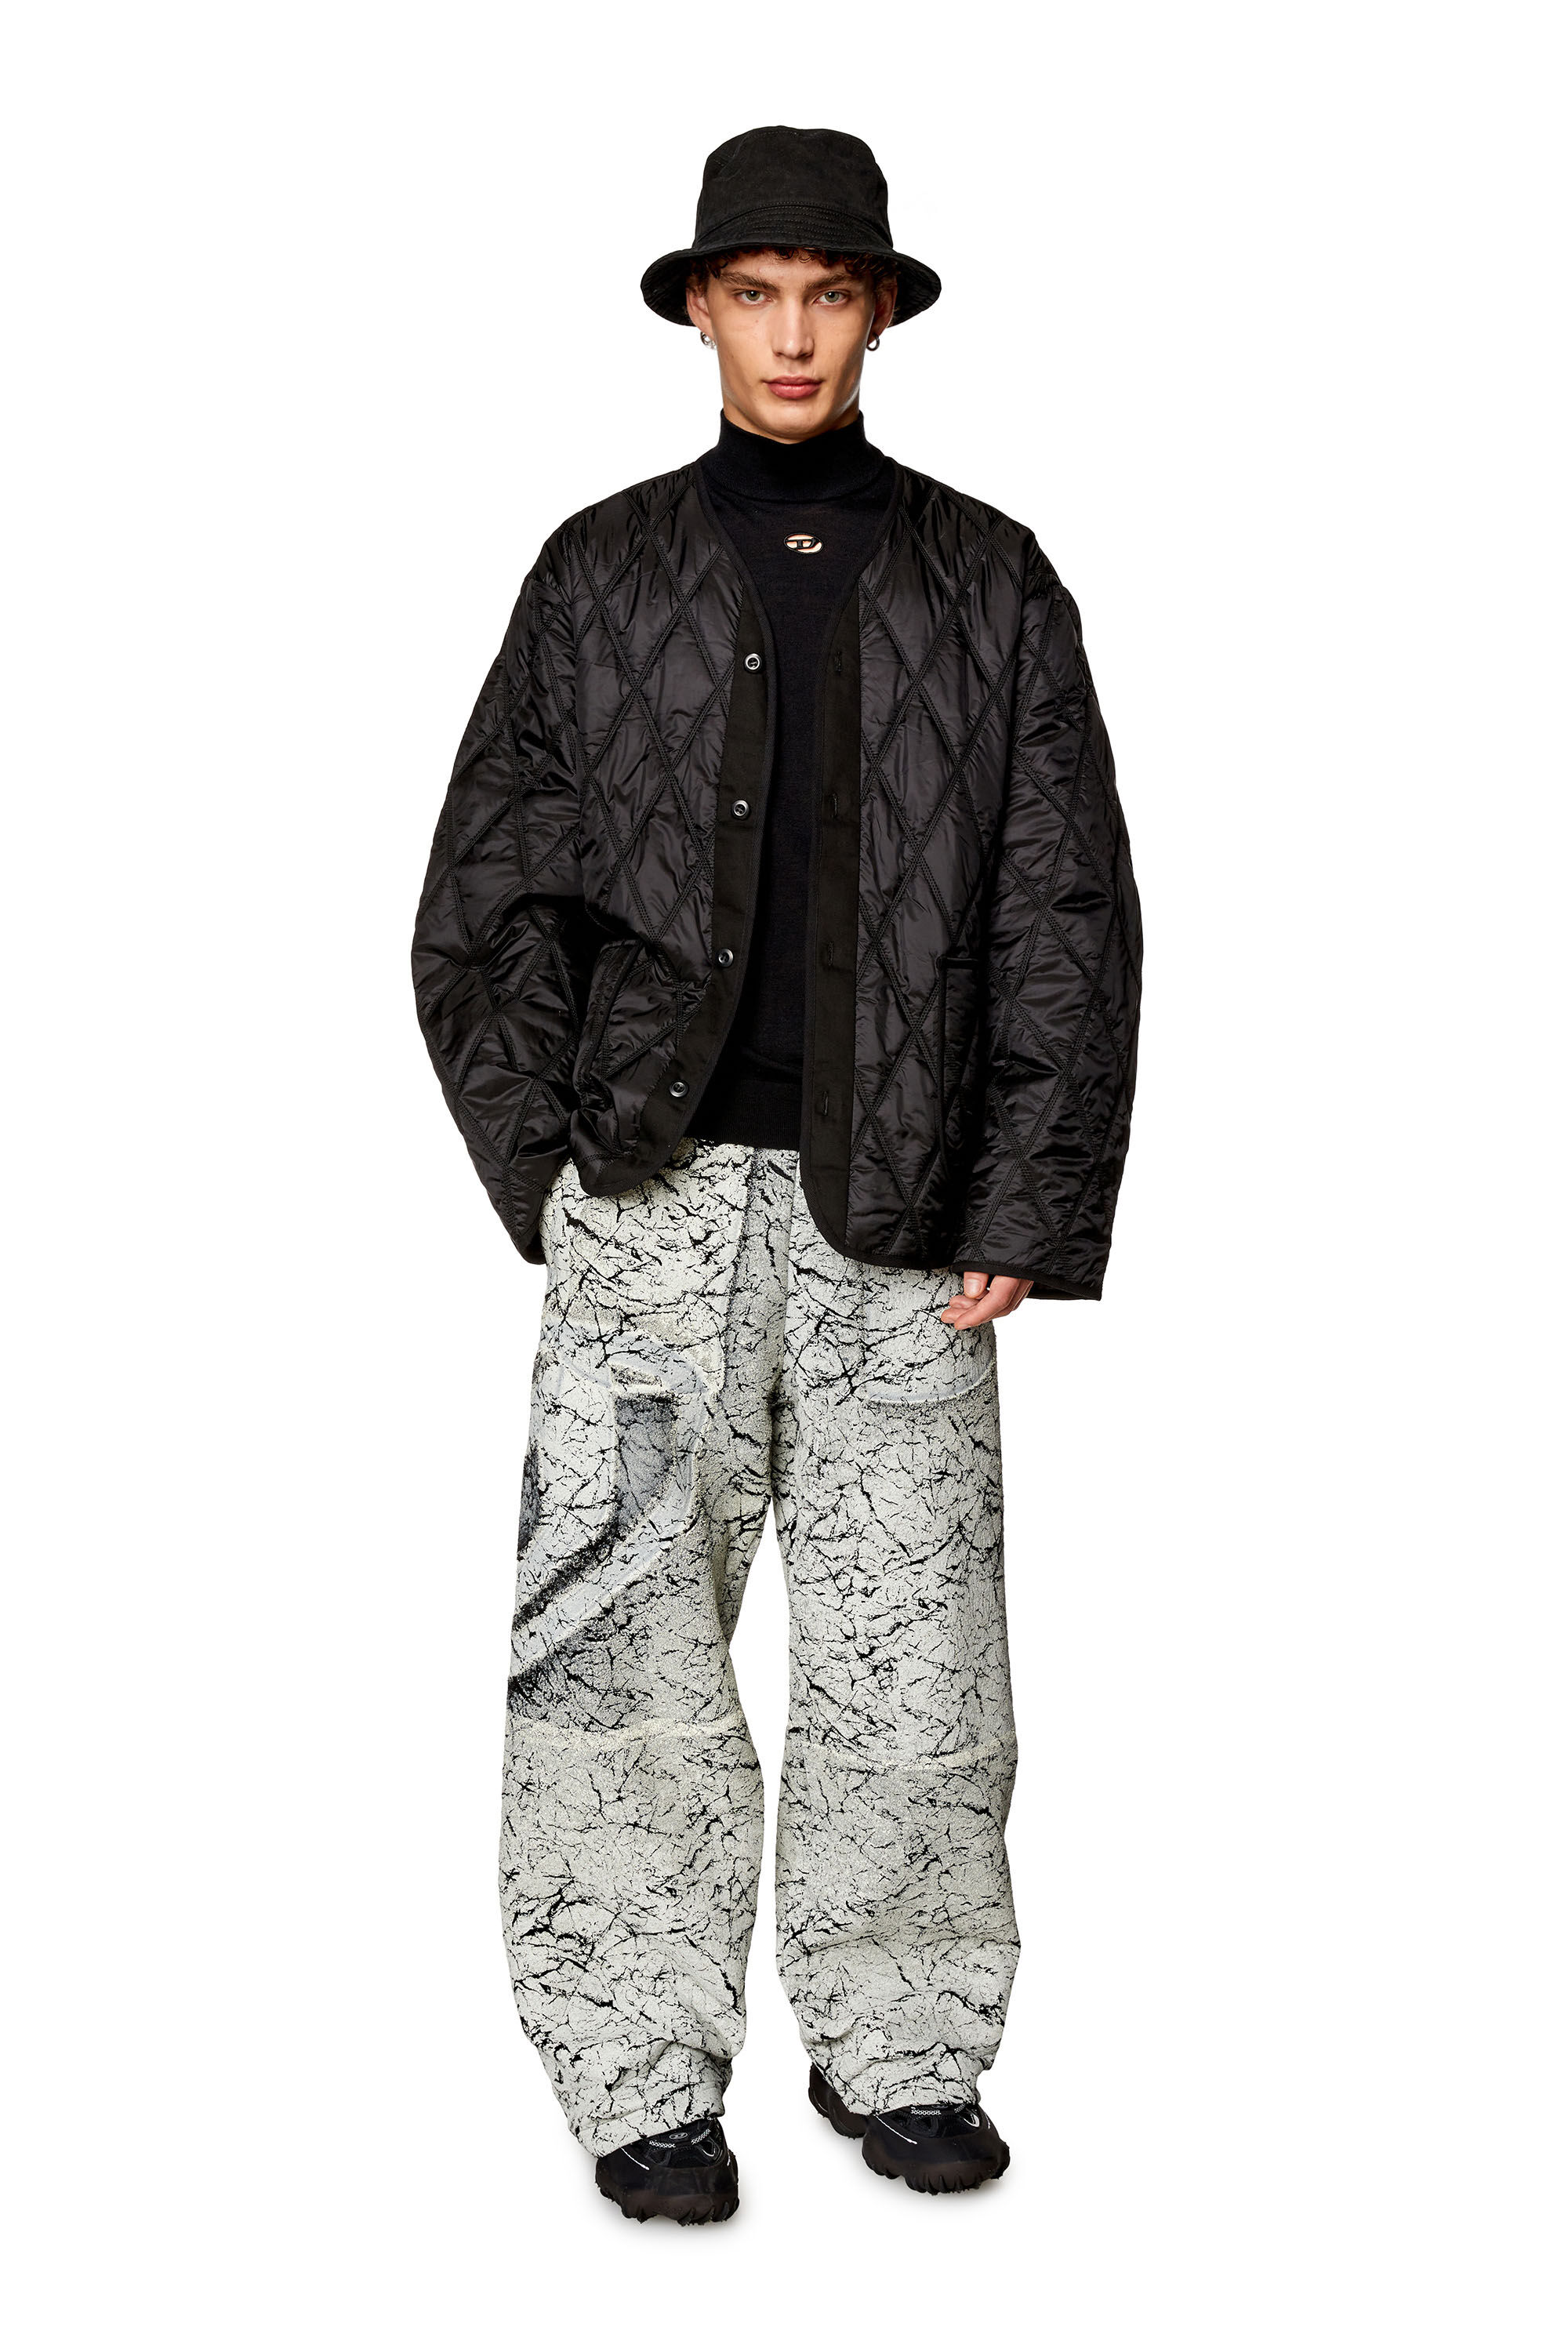 Diesel - J-BOY, Man V-neck jacket in quilted nylon in Black - Image 1